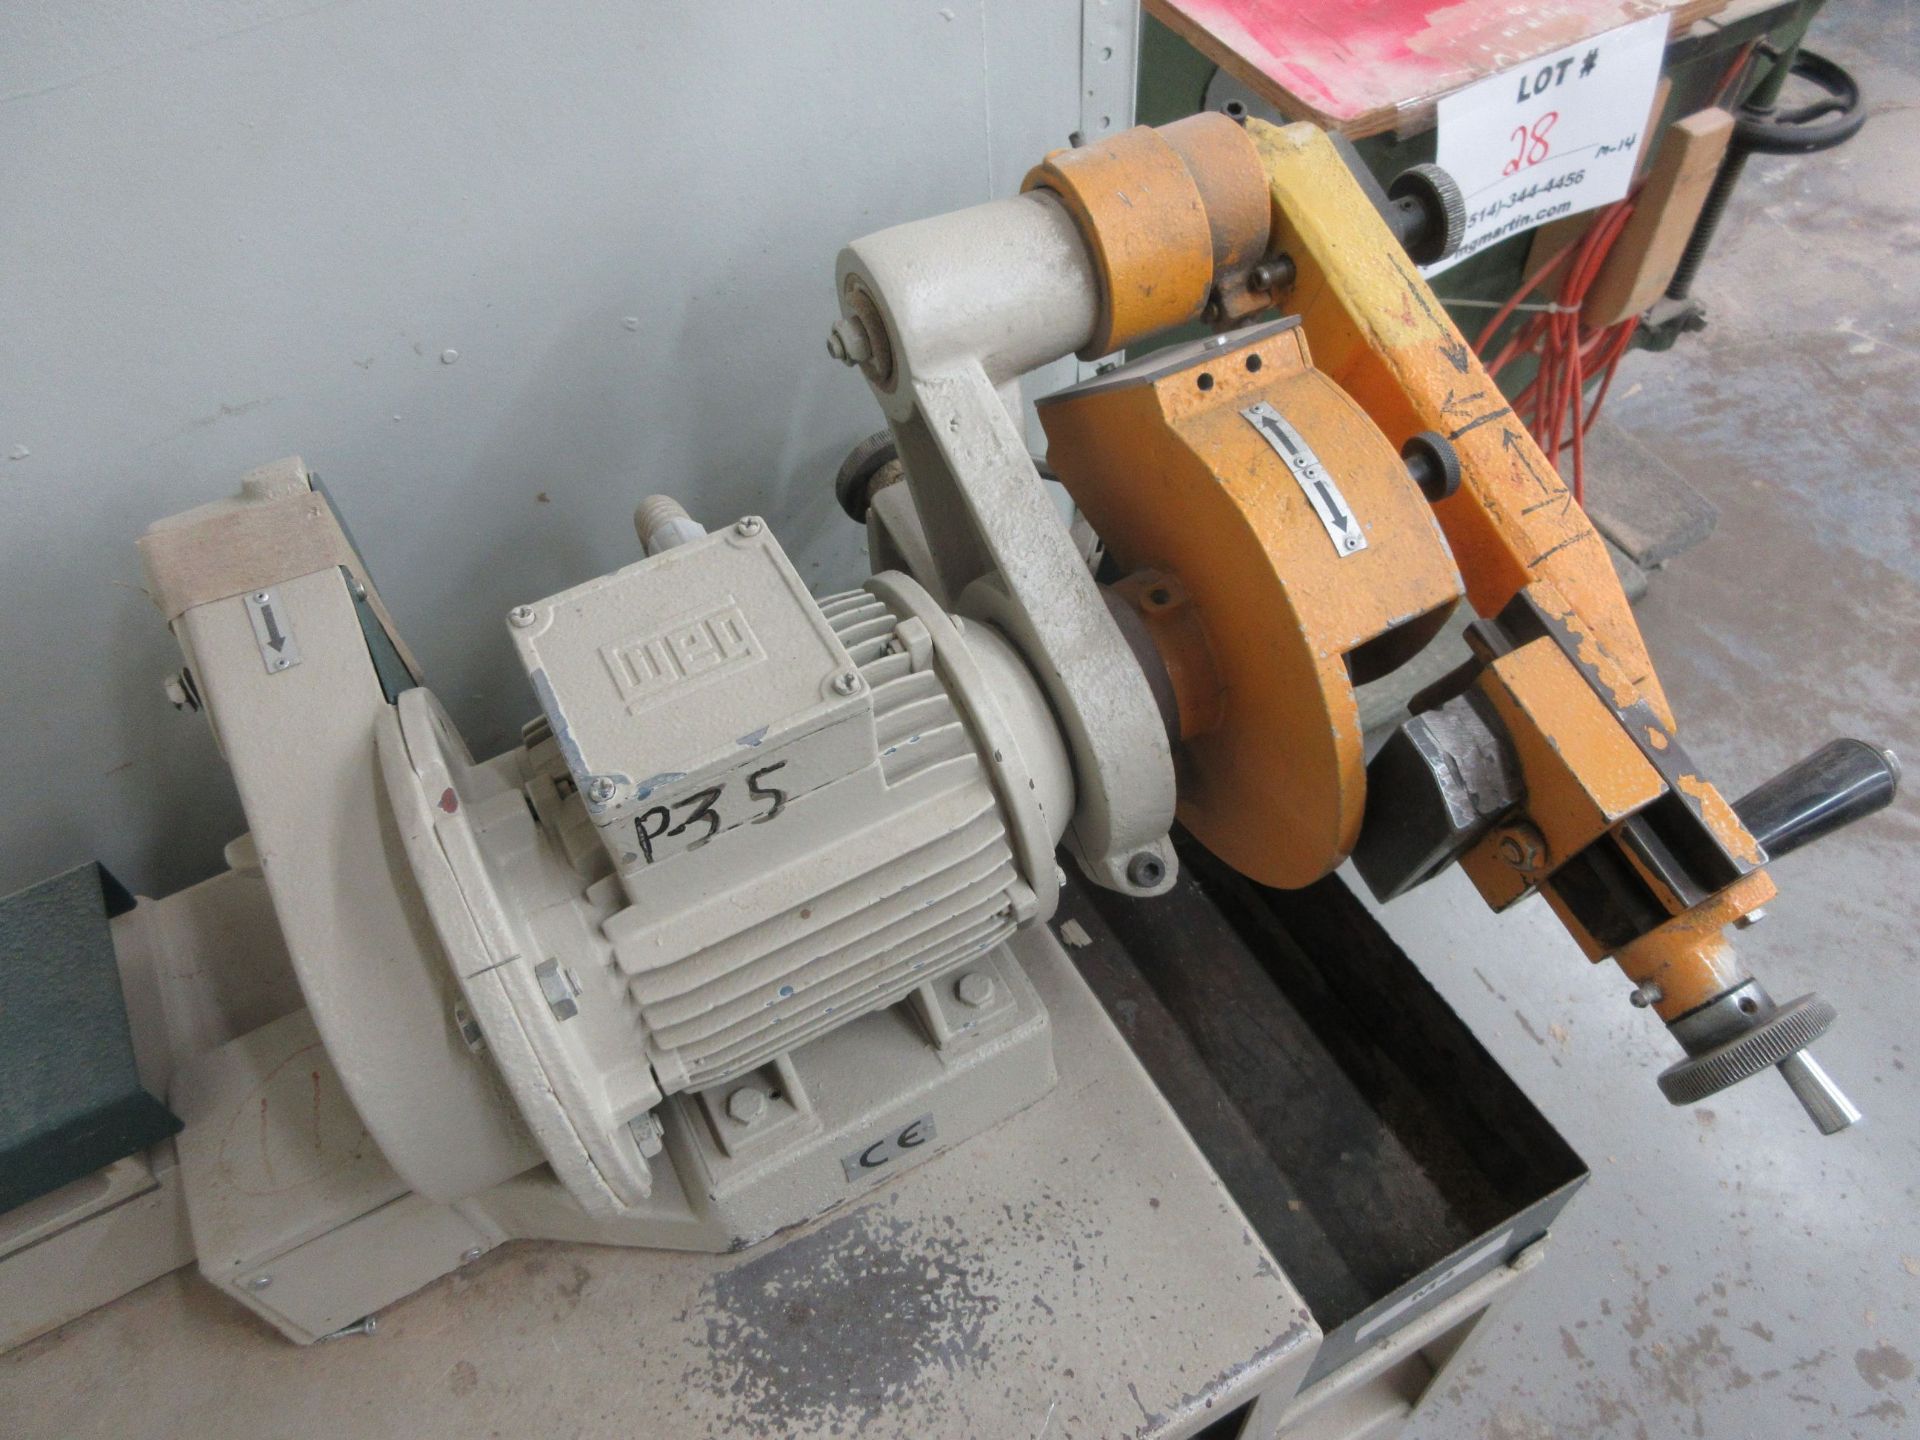 FRAMA grinder/sharpener, Mod: ATC, 600 volts - Image 3 of 6